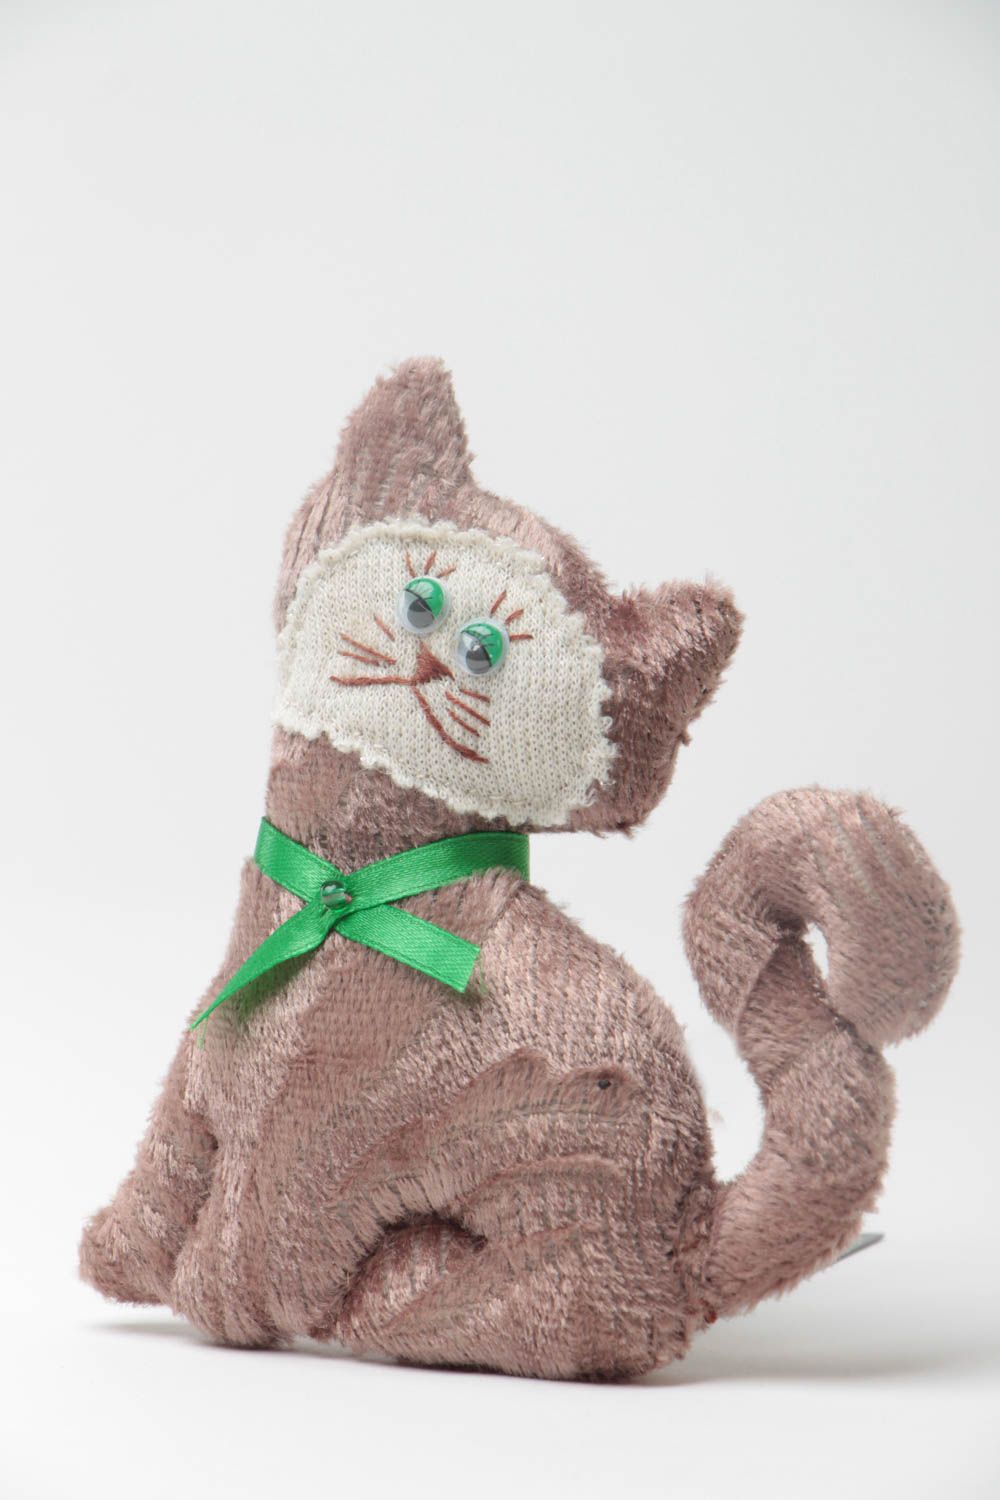 Шерстяная игрушка ручной работы в виде кота мягкая текстильная для ребенка фото 2